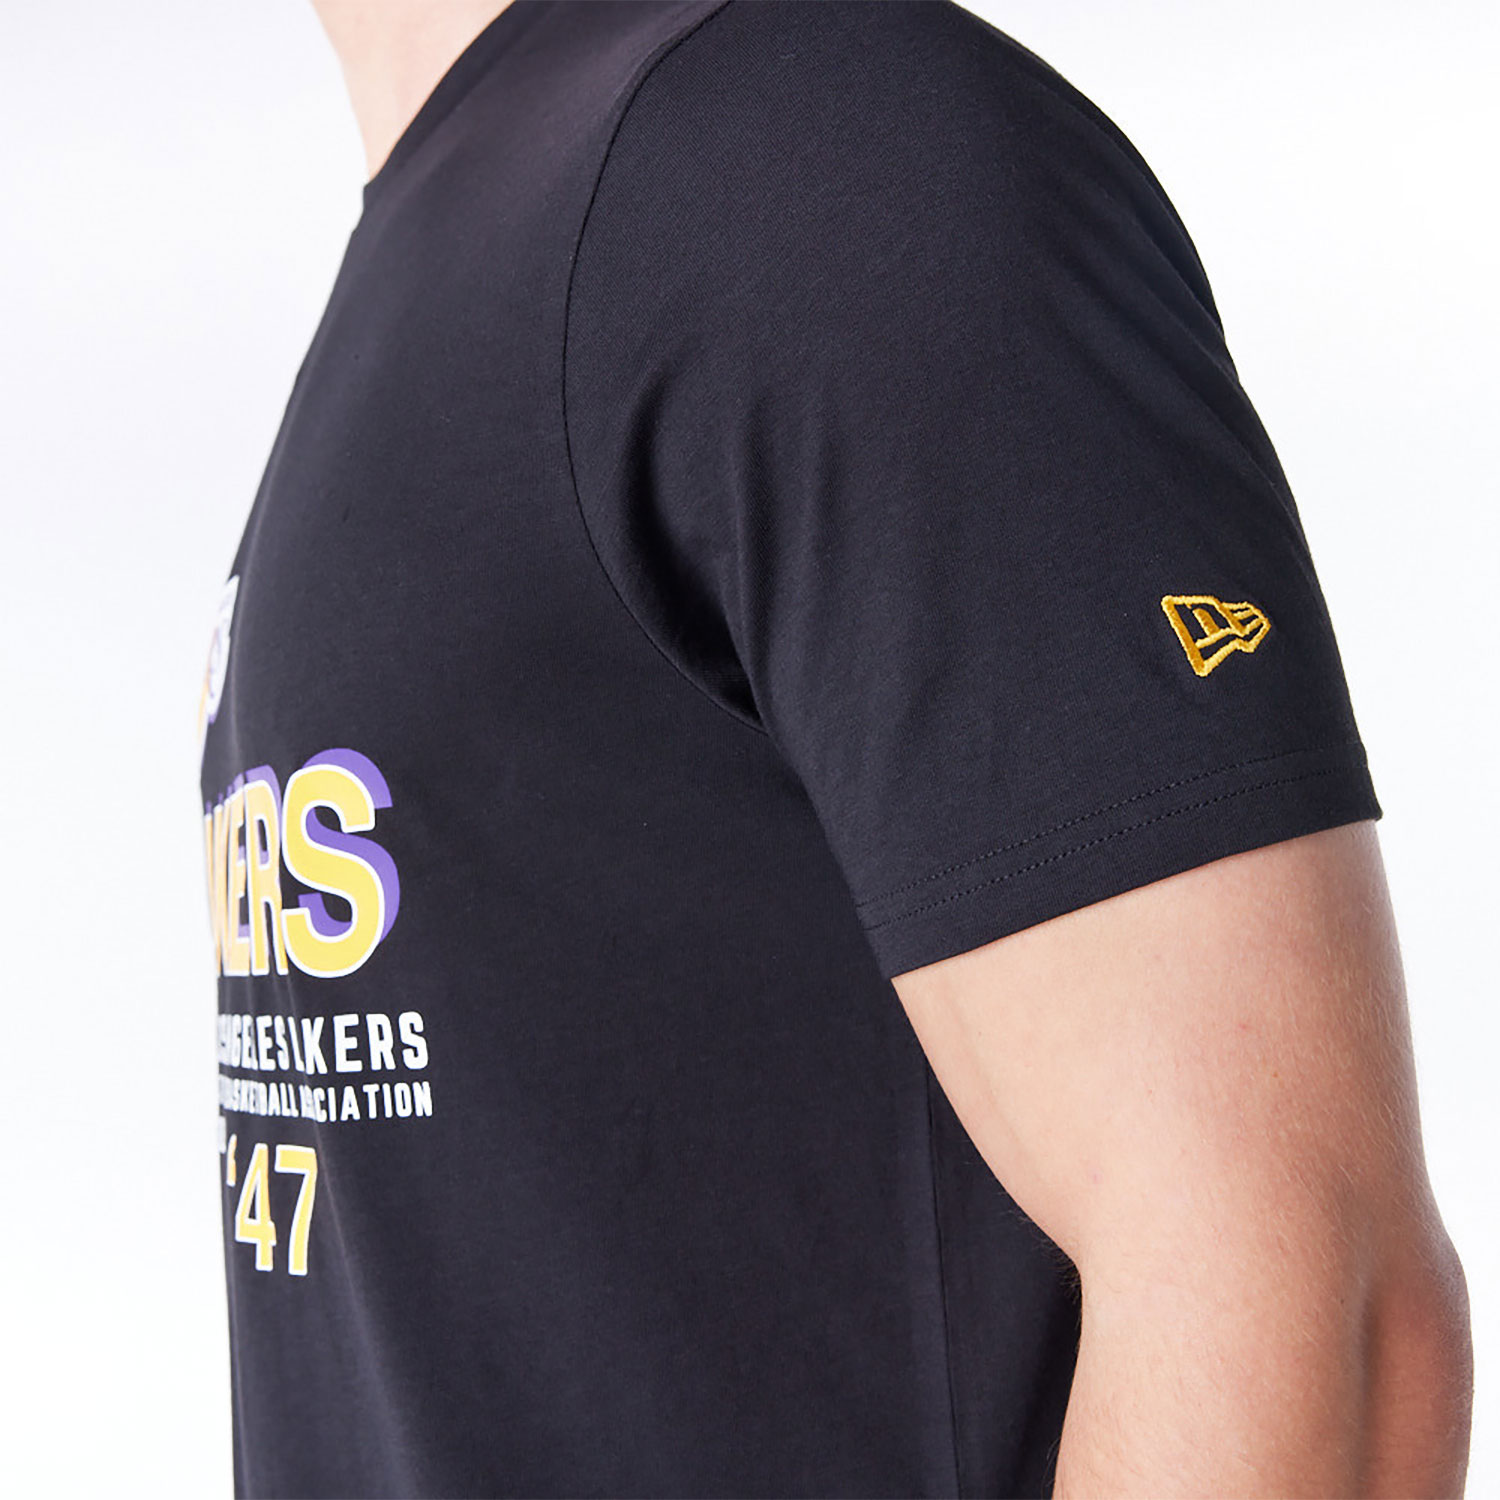 LA Lakers NBA Graphic Black T-Shirt